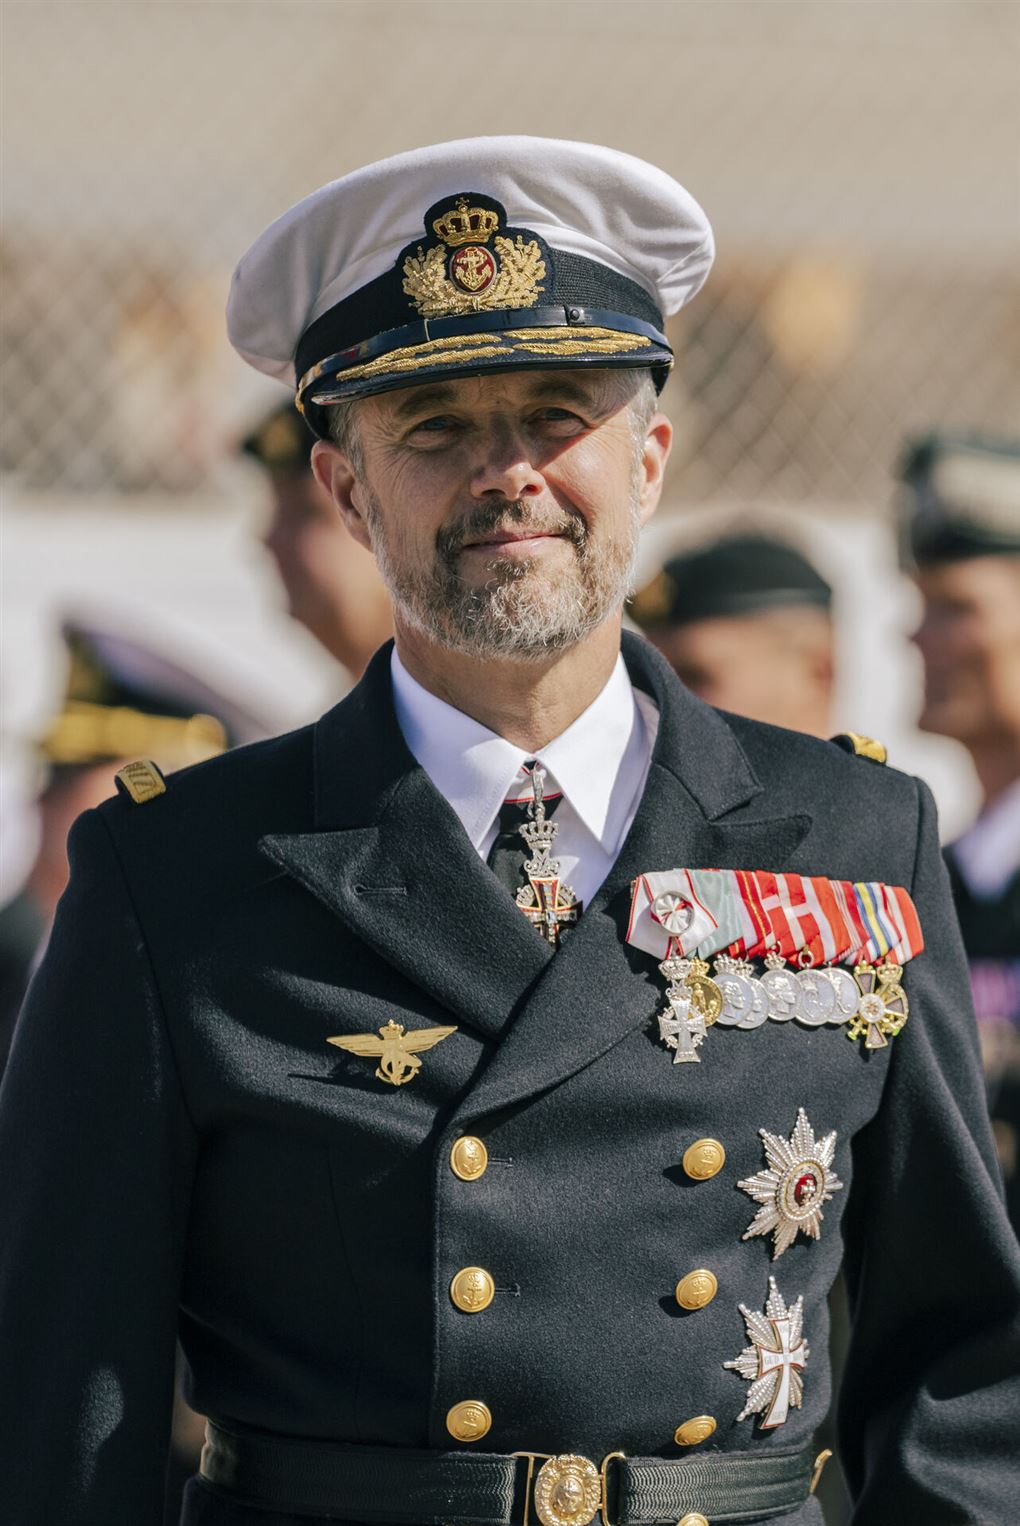 Kong Frederik med uniform på